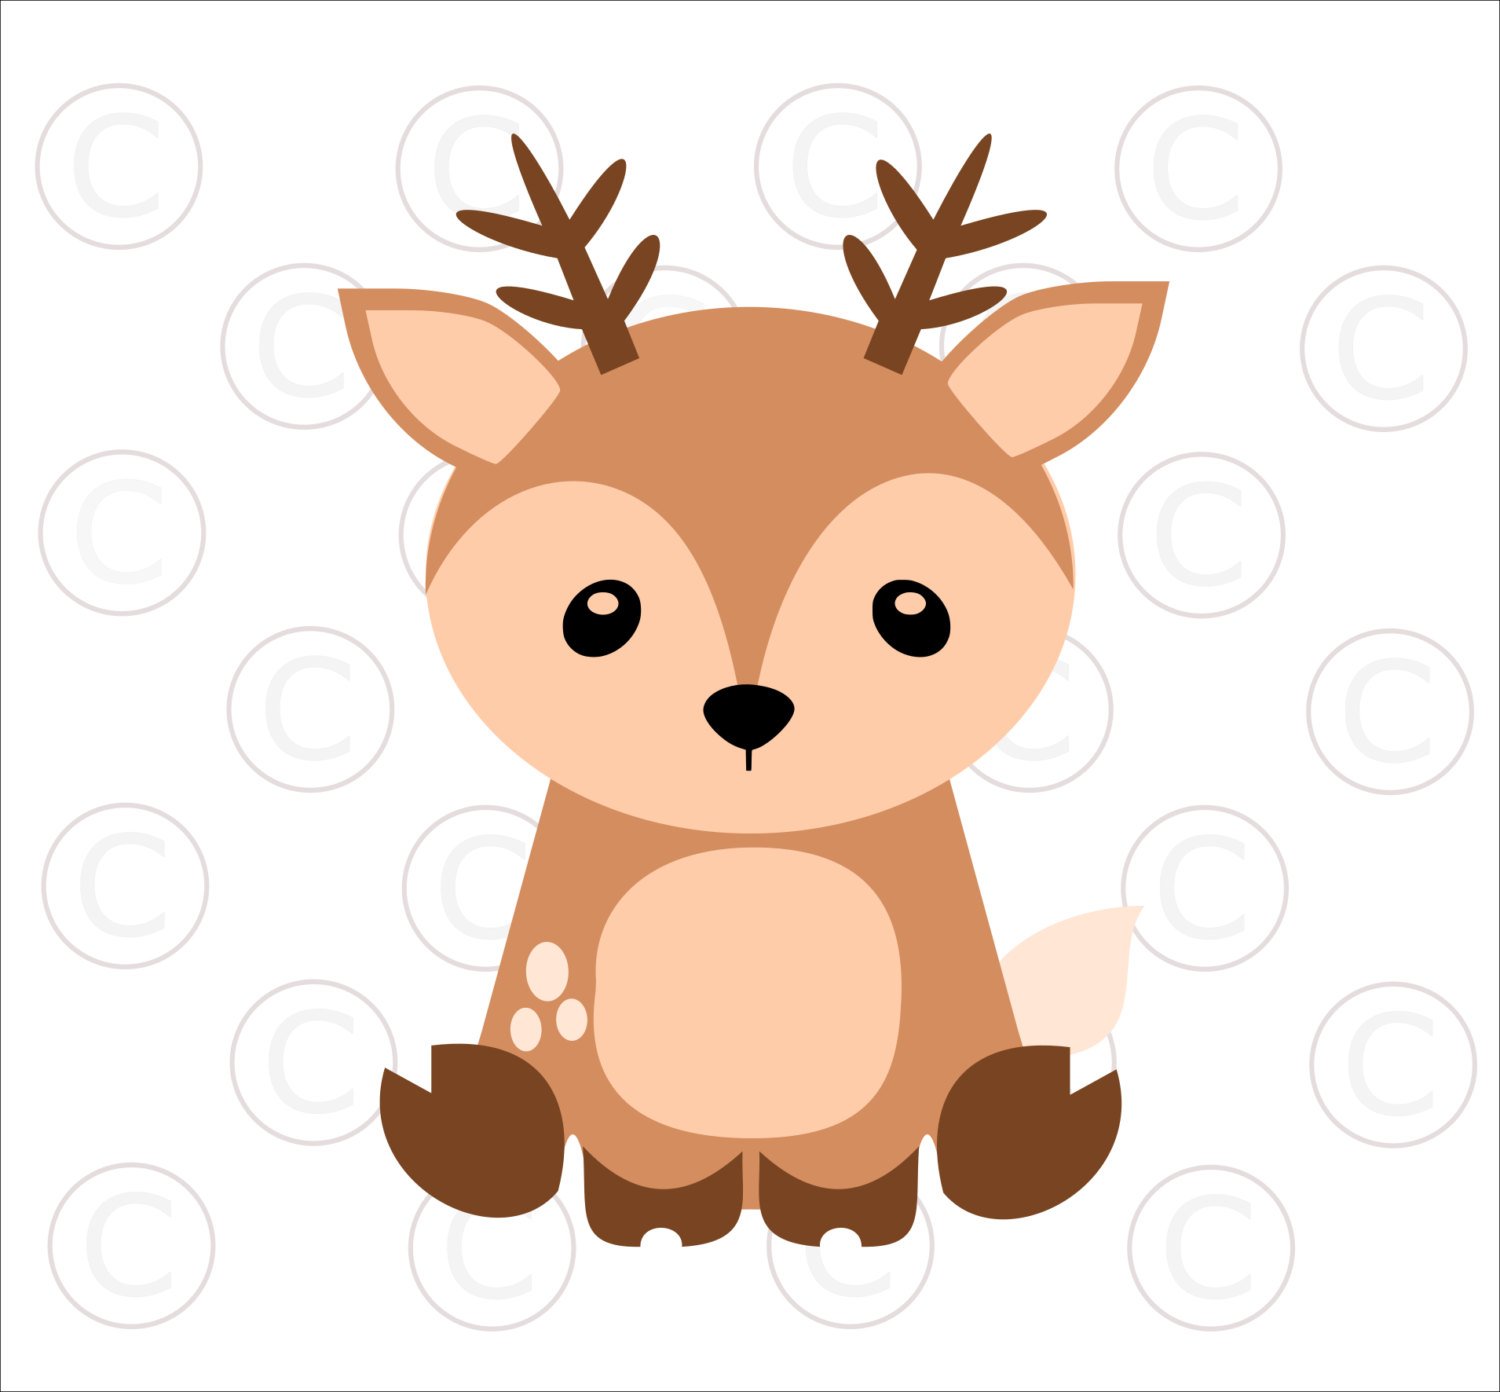 Deer Face Clipart at GetDrawings.com.